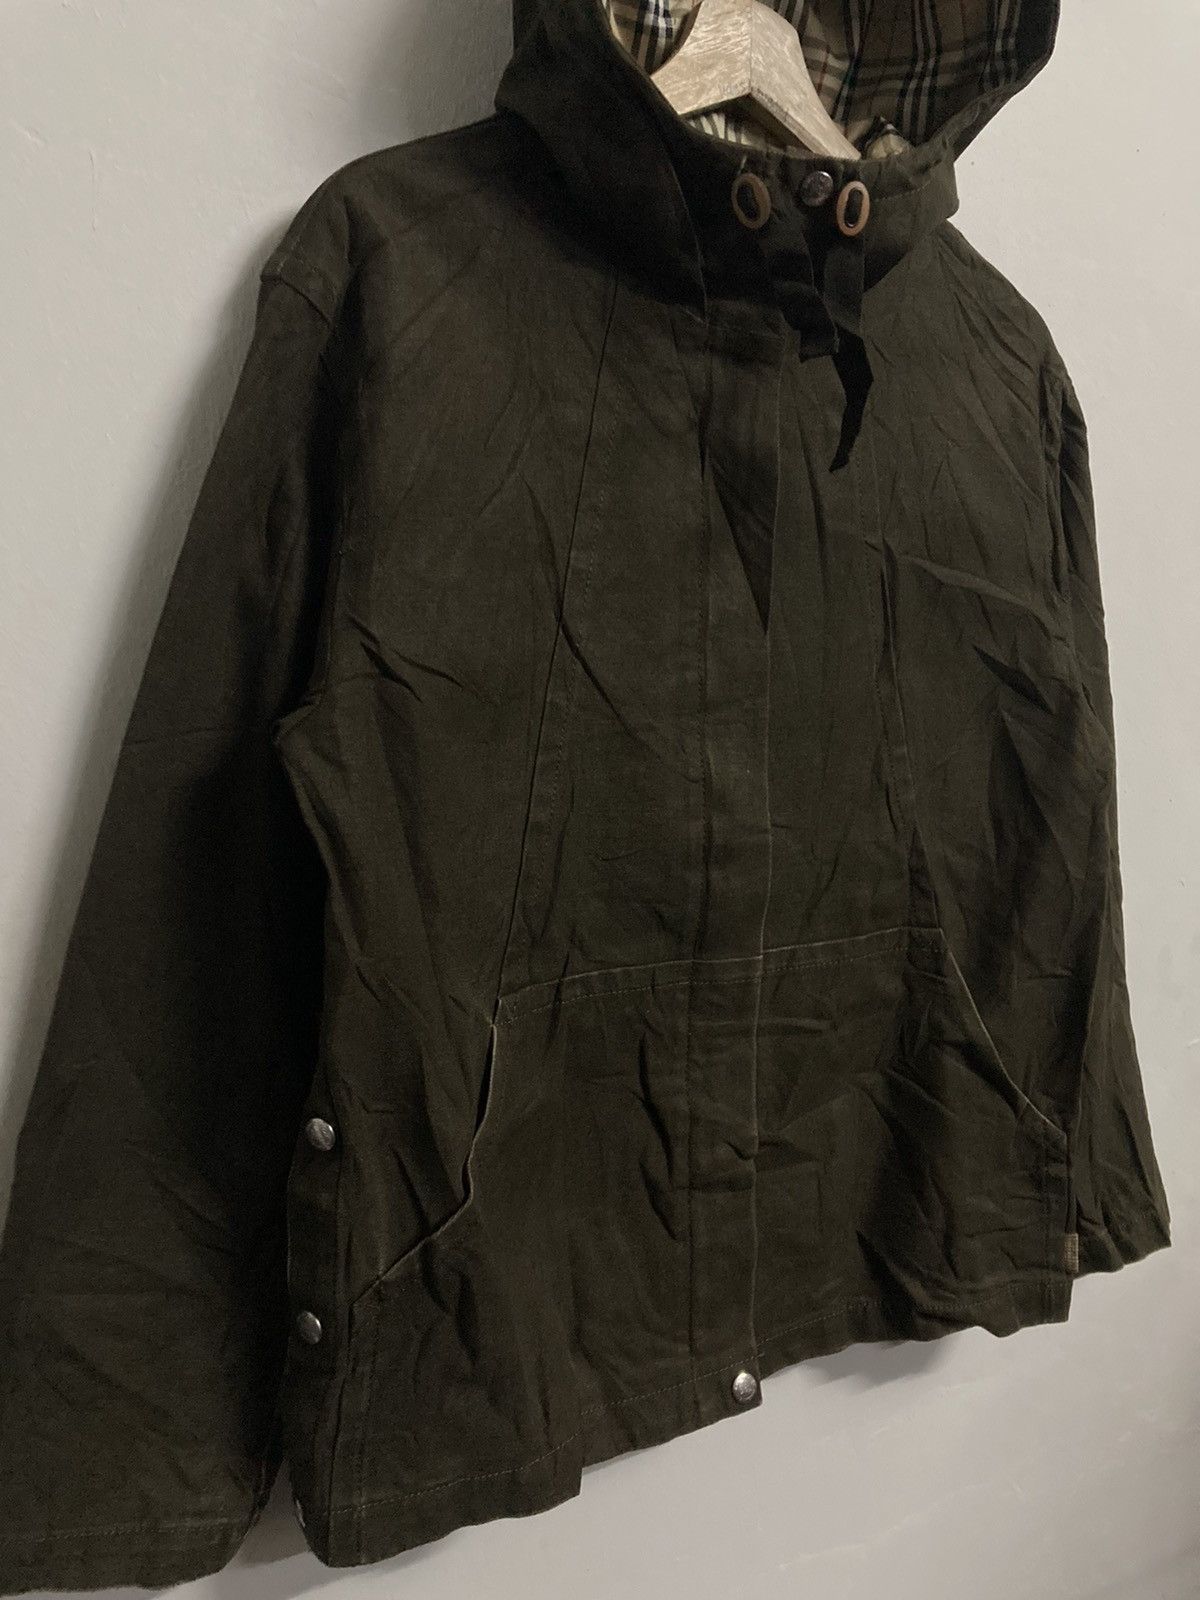 Burberrys Blue Label Hooded Jacket in Size 38 - 5